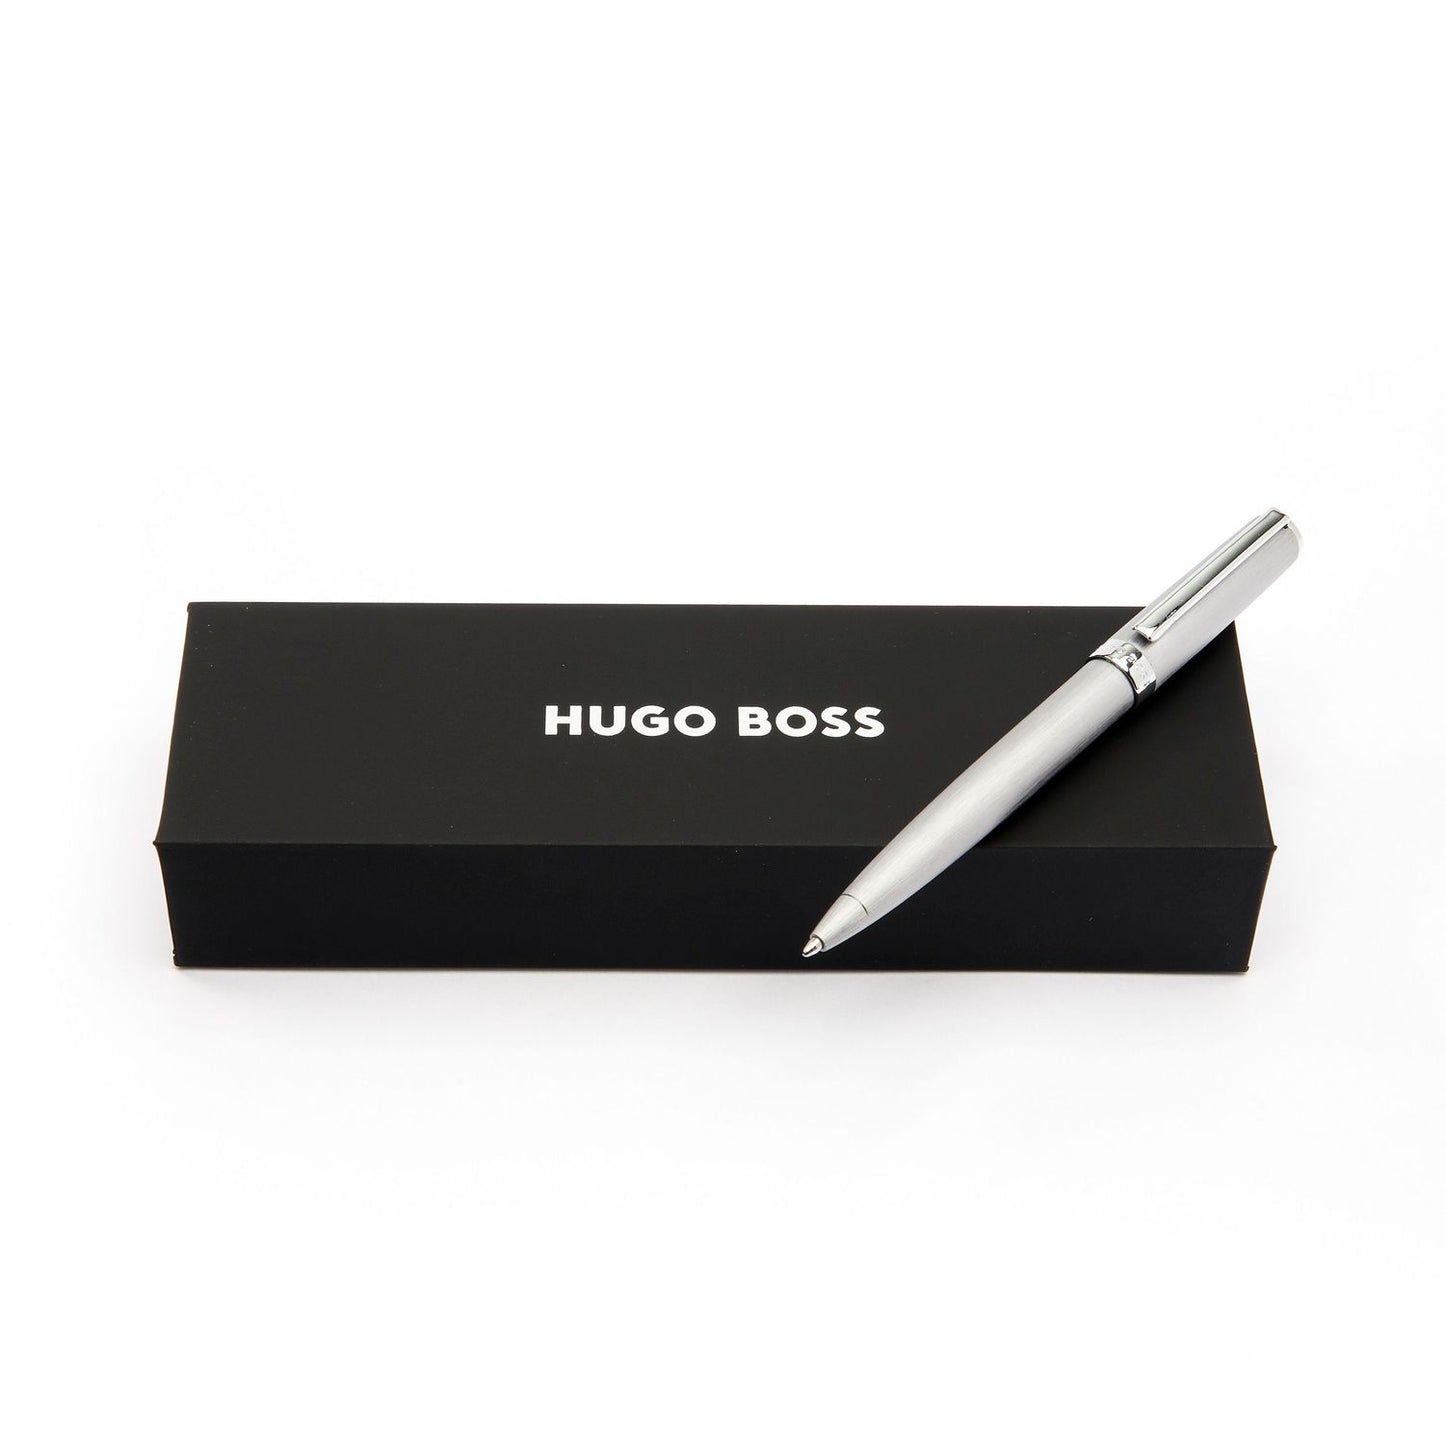 Hugo Boss Kugelschreiber Gear Brushed Chrome